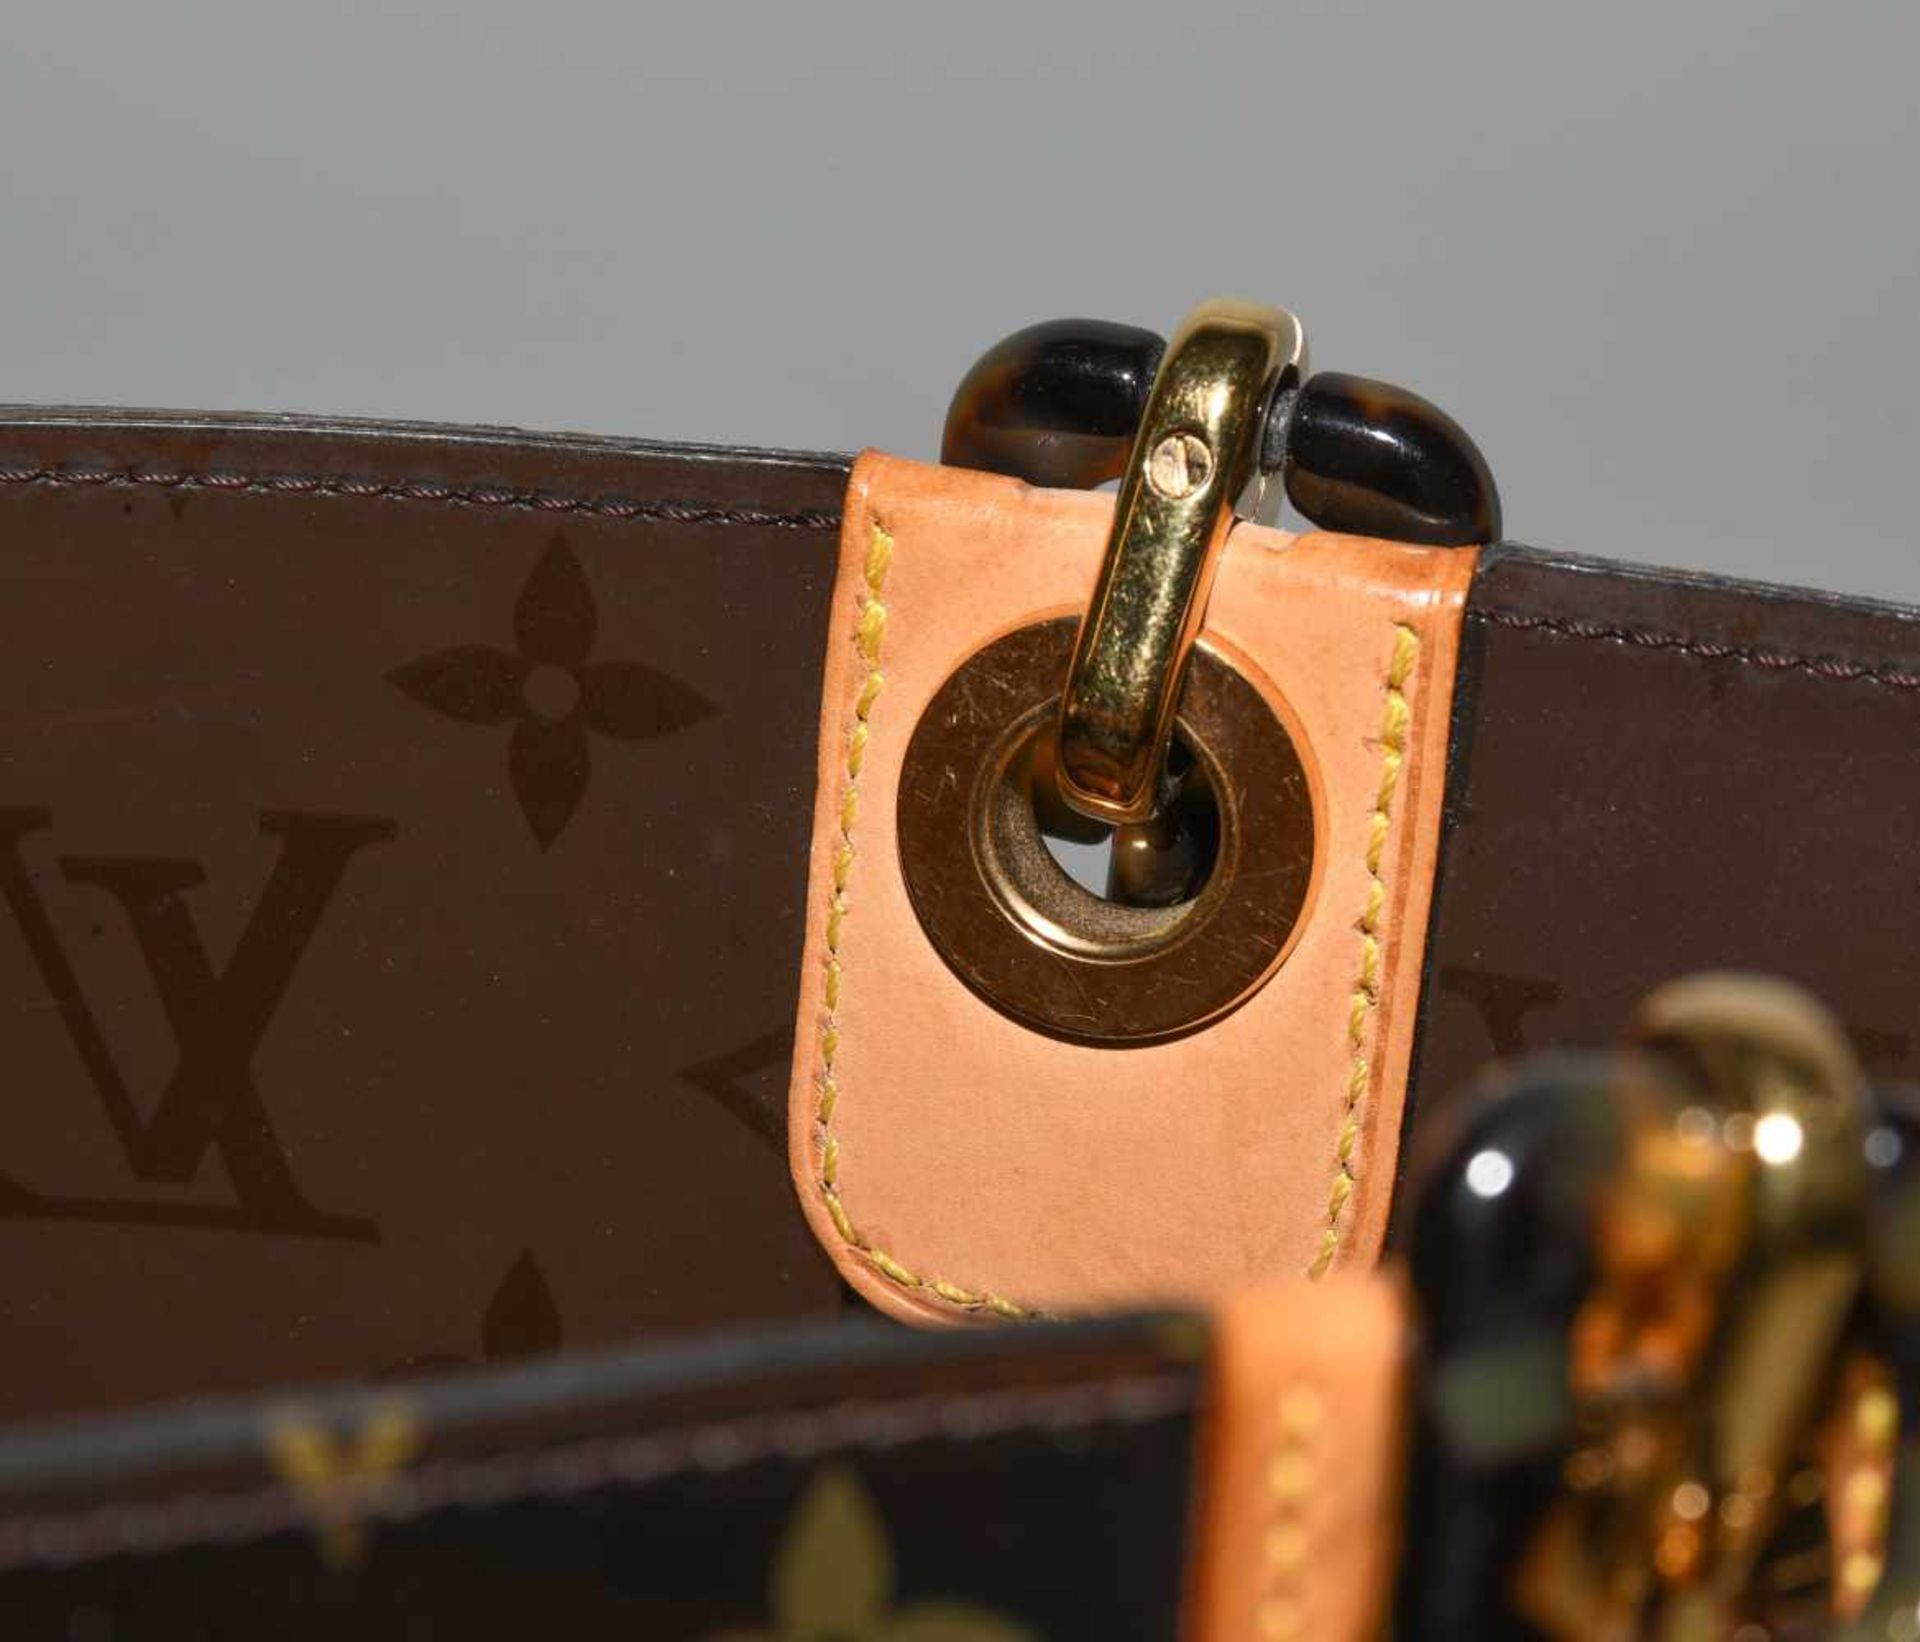 Louis Vuitton, "Ambre sac cabas"Schultertasche aus braunem Vinyl mit klassischem Monogram Muster. - Bild 8 aus 17